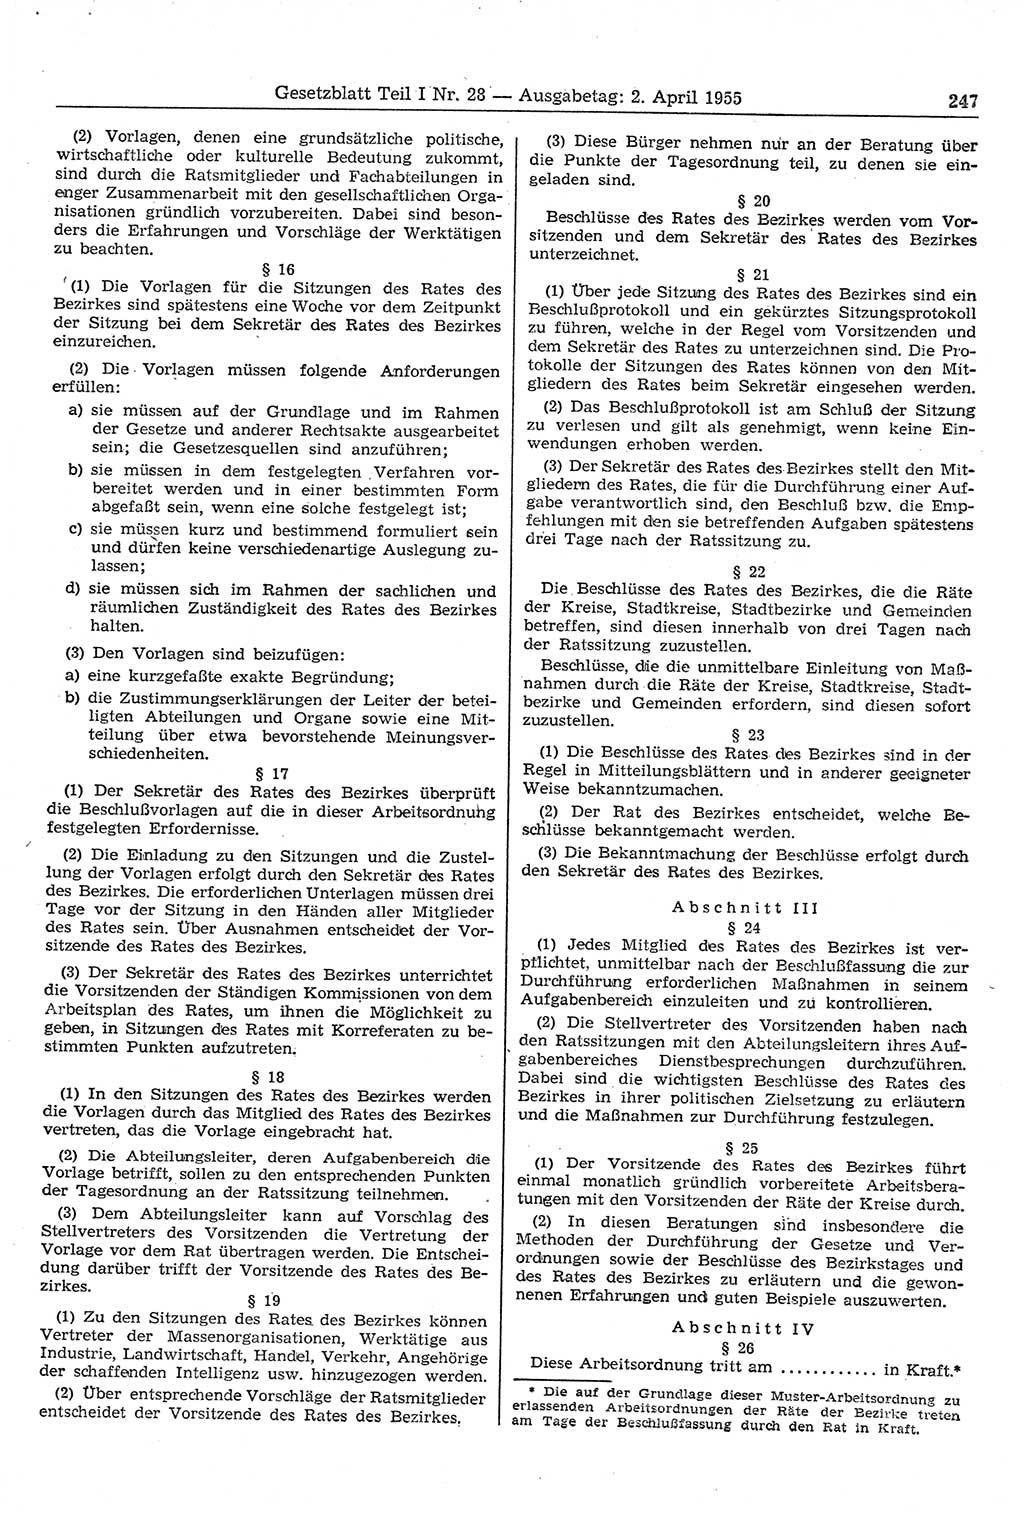 Gesetzblatt (GBl.) der Deutschen Demokratischen Republik (DDR) Teil â… 1955, Seite 247 (GBl. DDR â… 1955, S. 247)